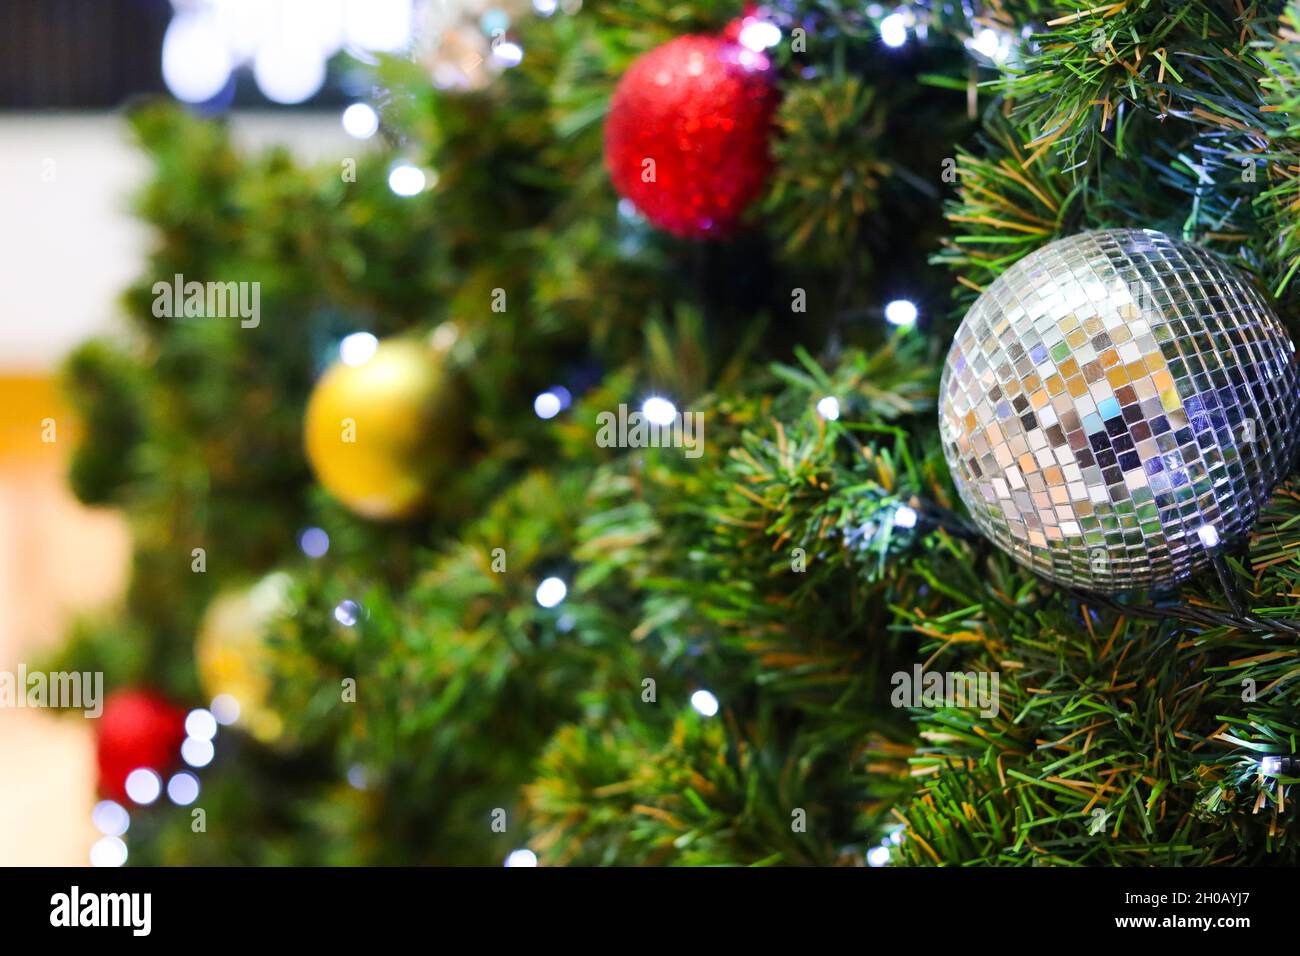 Weihnachtsbaum mit elektrischem Licht und bunten Kugeln verziert. Geeignet als Kulisse für Weihnachten und Neujahr. Stockfoto